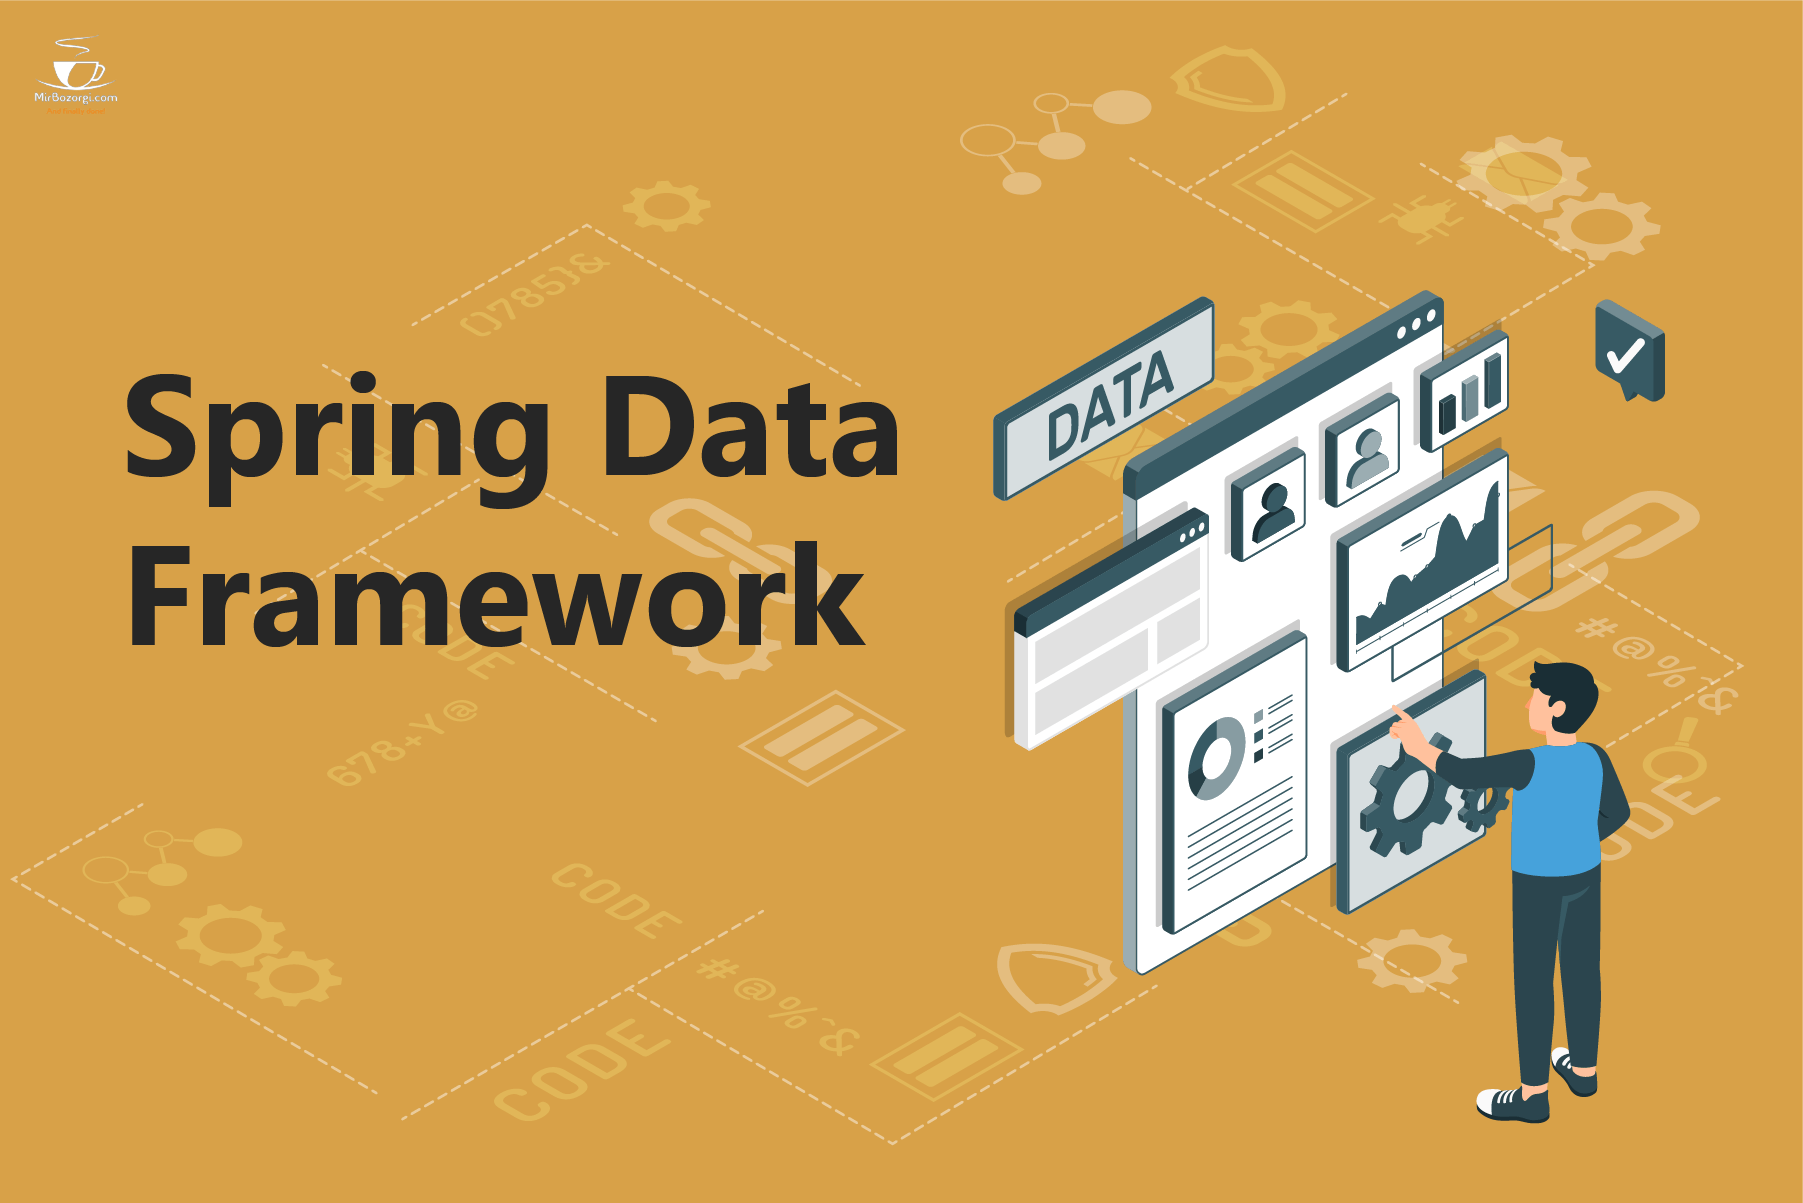 Spring Data Framework